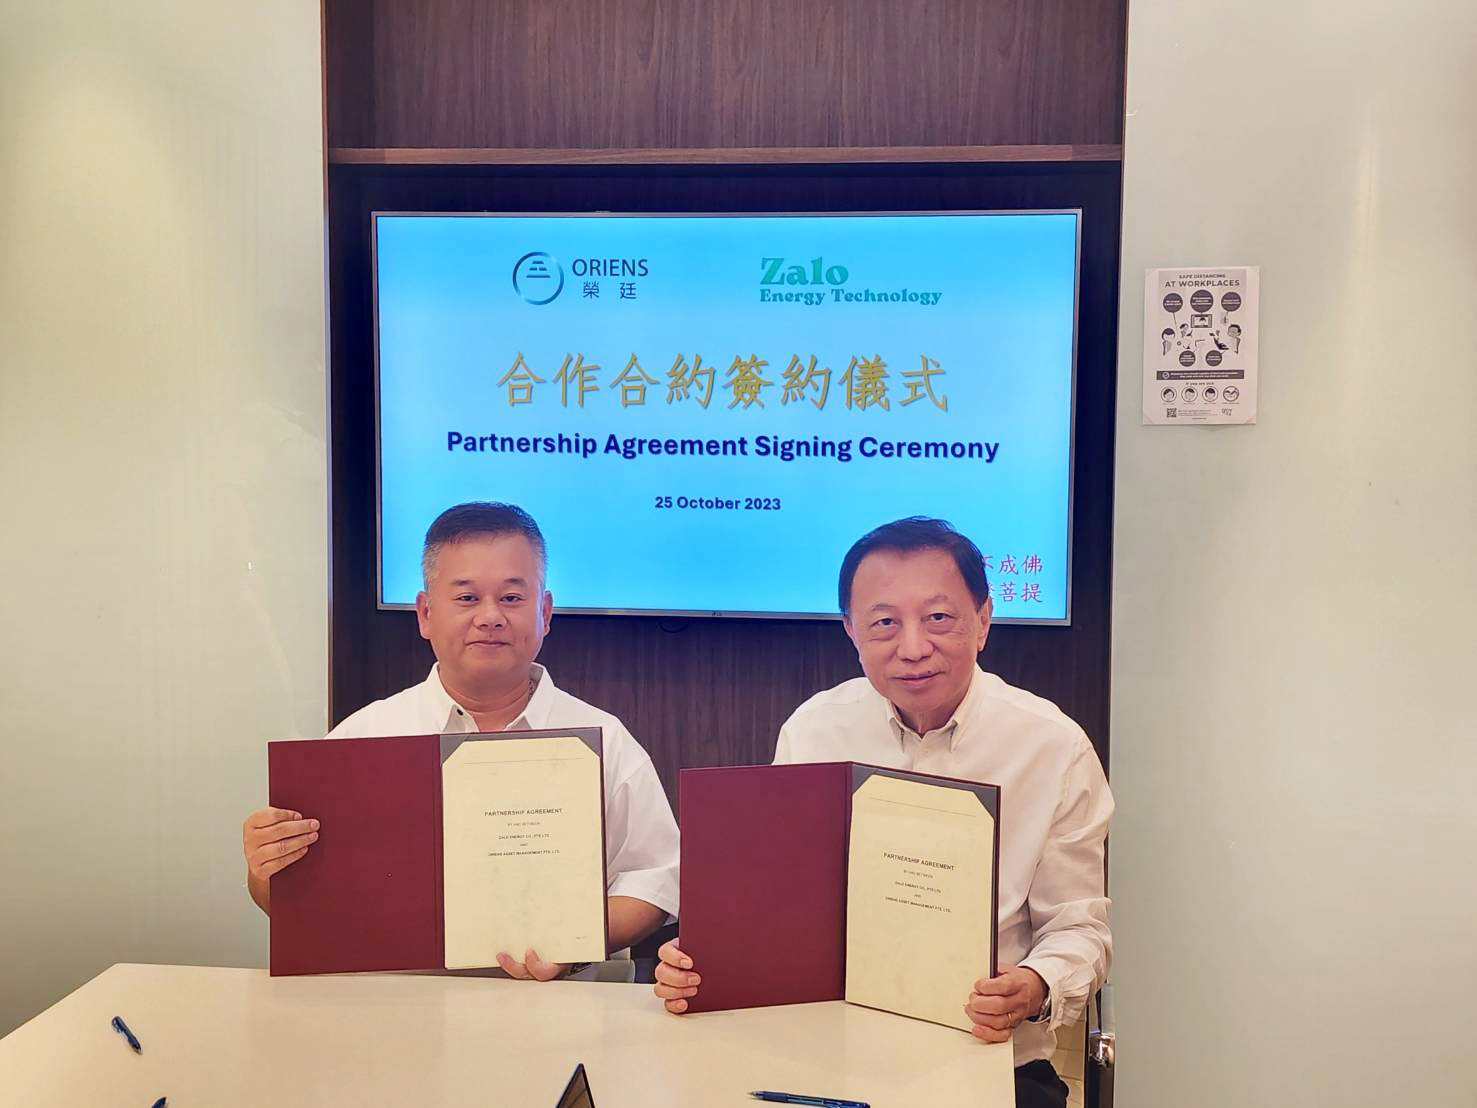 新 加 坡 榮 廷 董 事 長 ( 右 ) 與 寰 宇 能 源 執 行 董 事 呂 朋 崴 ( 左 ) 。 